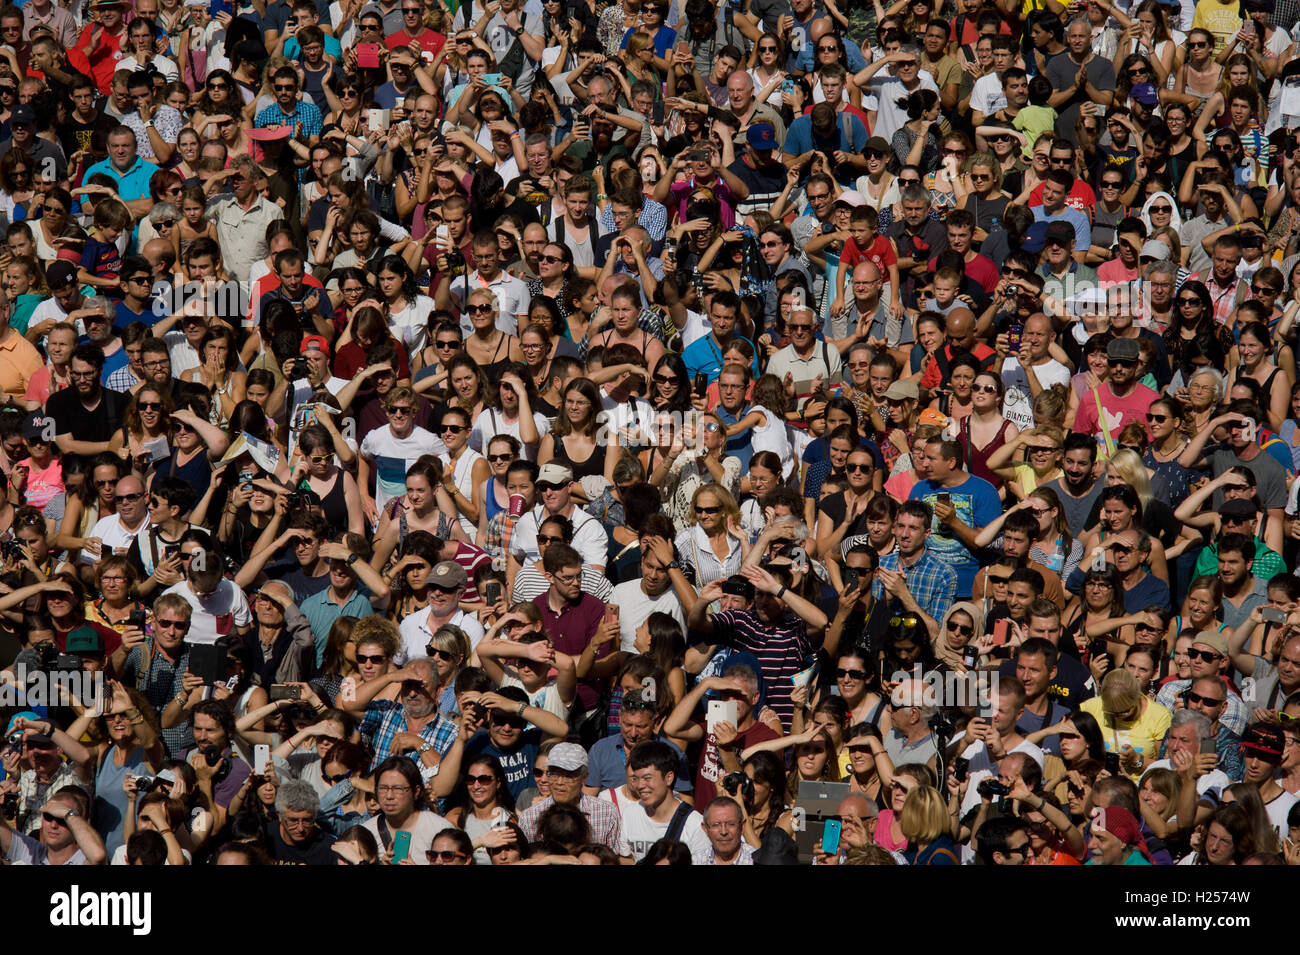 Barcelone, Catalogne, Espagne. Sep 24, 2016. La foule à tours humaines pendant la Jornada Castellera (tours humaines jour) tenue à Barcelone pour la Merce Crédit : Jordi Boixareu Festival/ZUMA/Alamy Fil Live News Banque D'Images